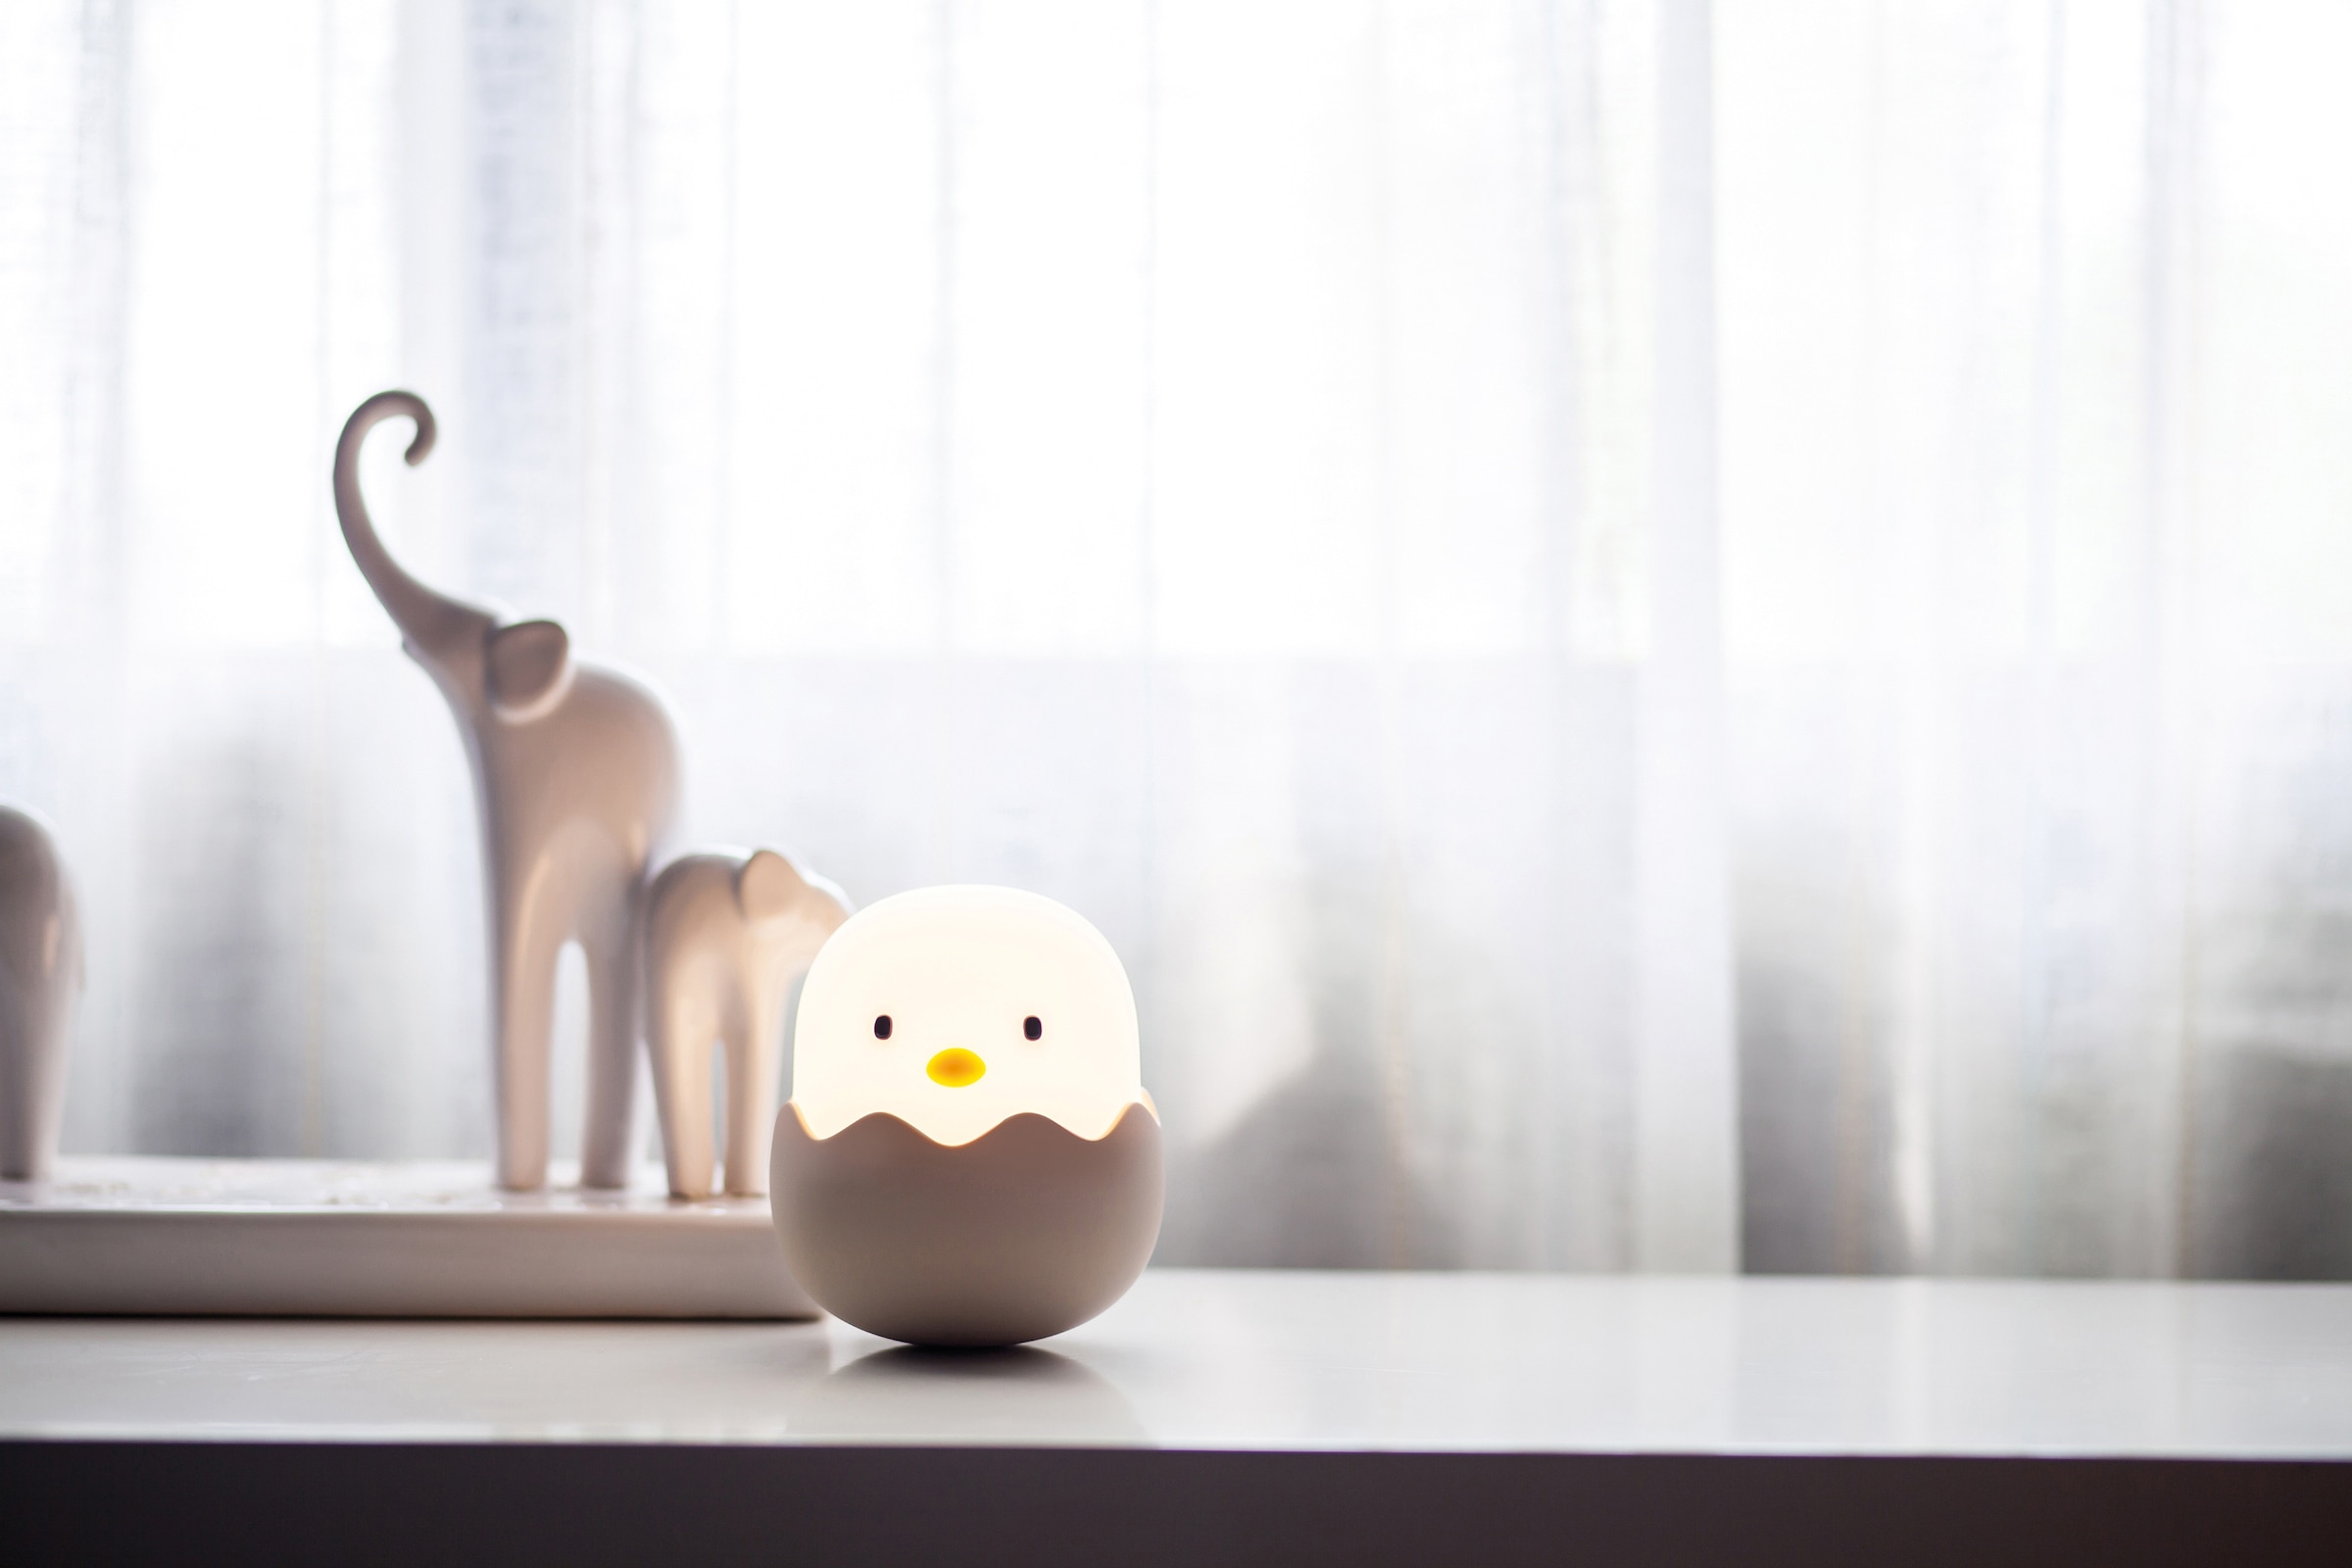 niermann LED Nachtlicht »Eggy Egg«, 1 flammig-flammig, Nachtlicht Eggy Egg  kaufen im OTTO Online Shop